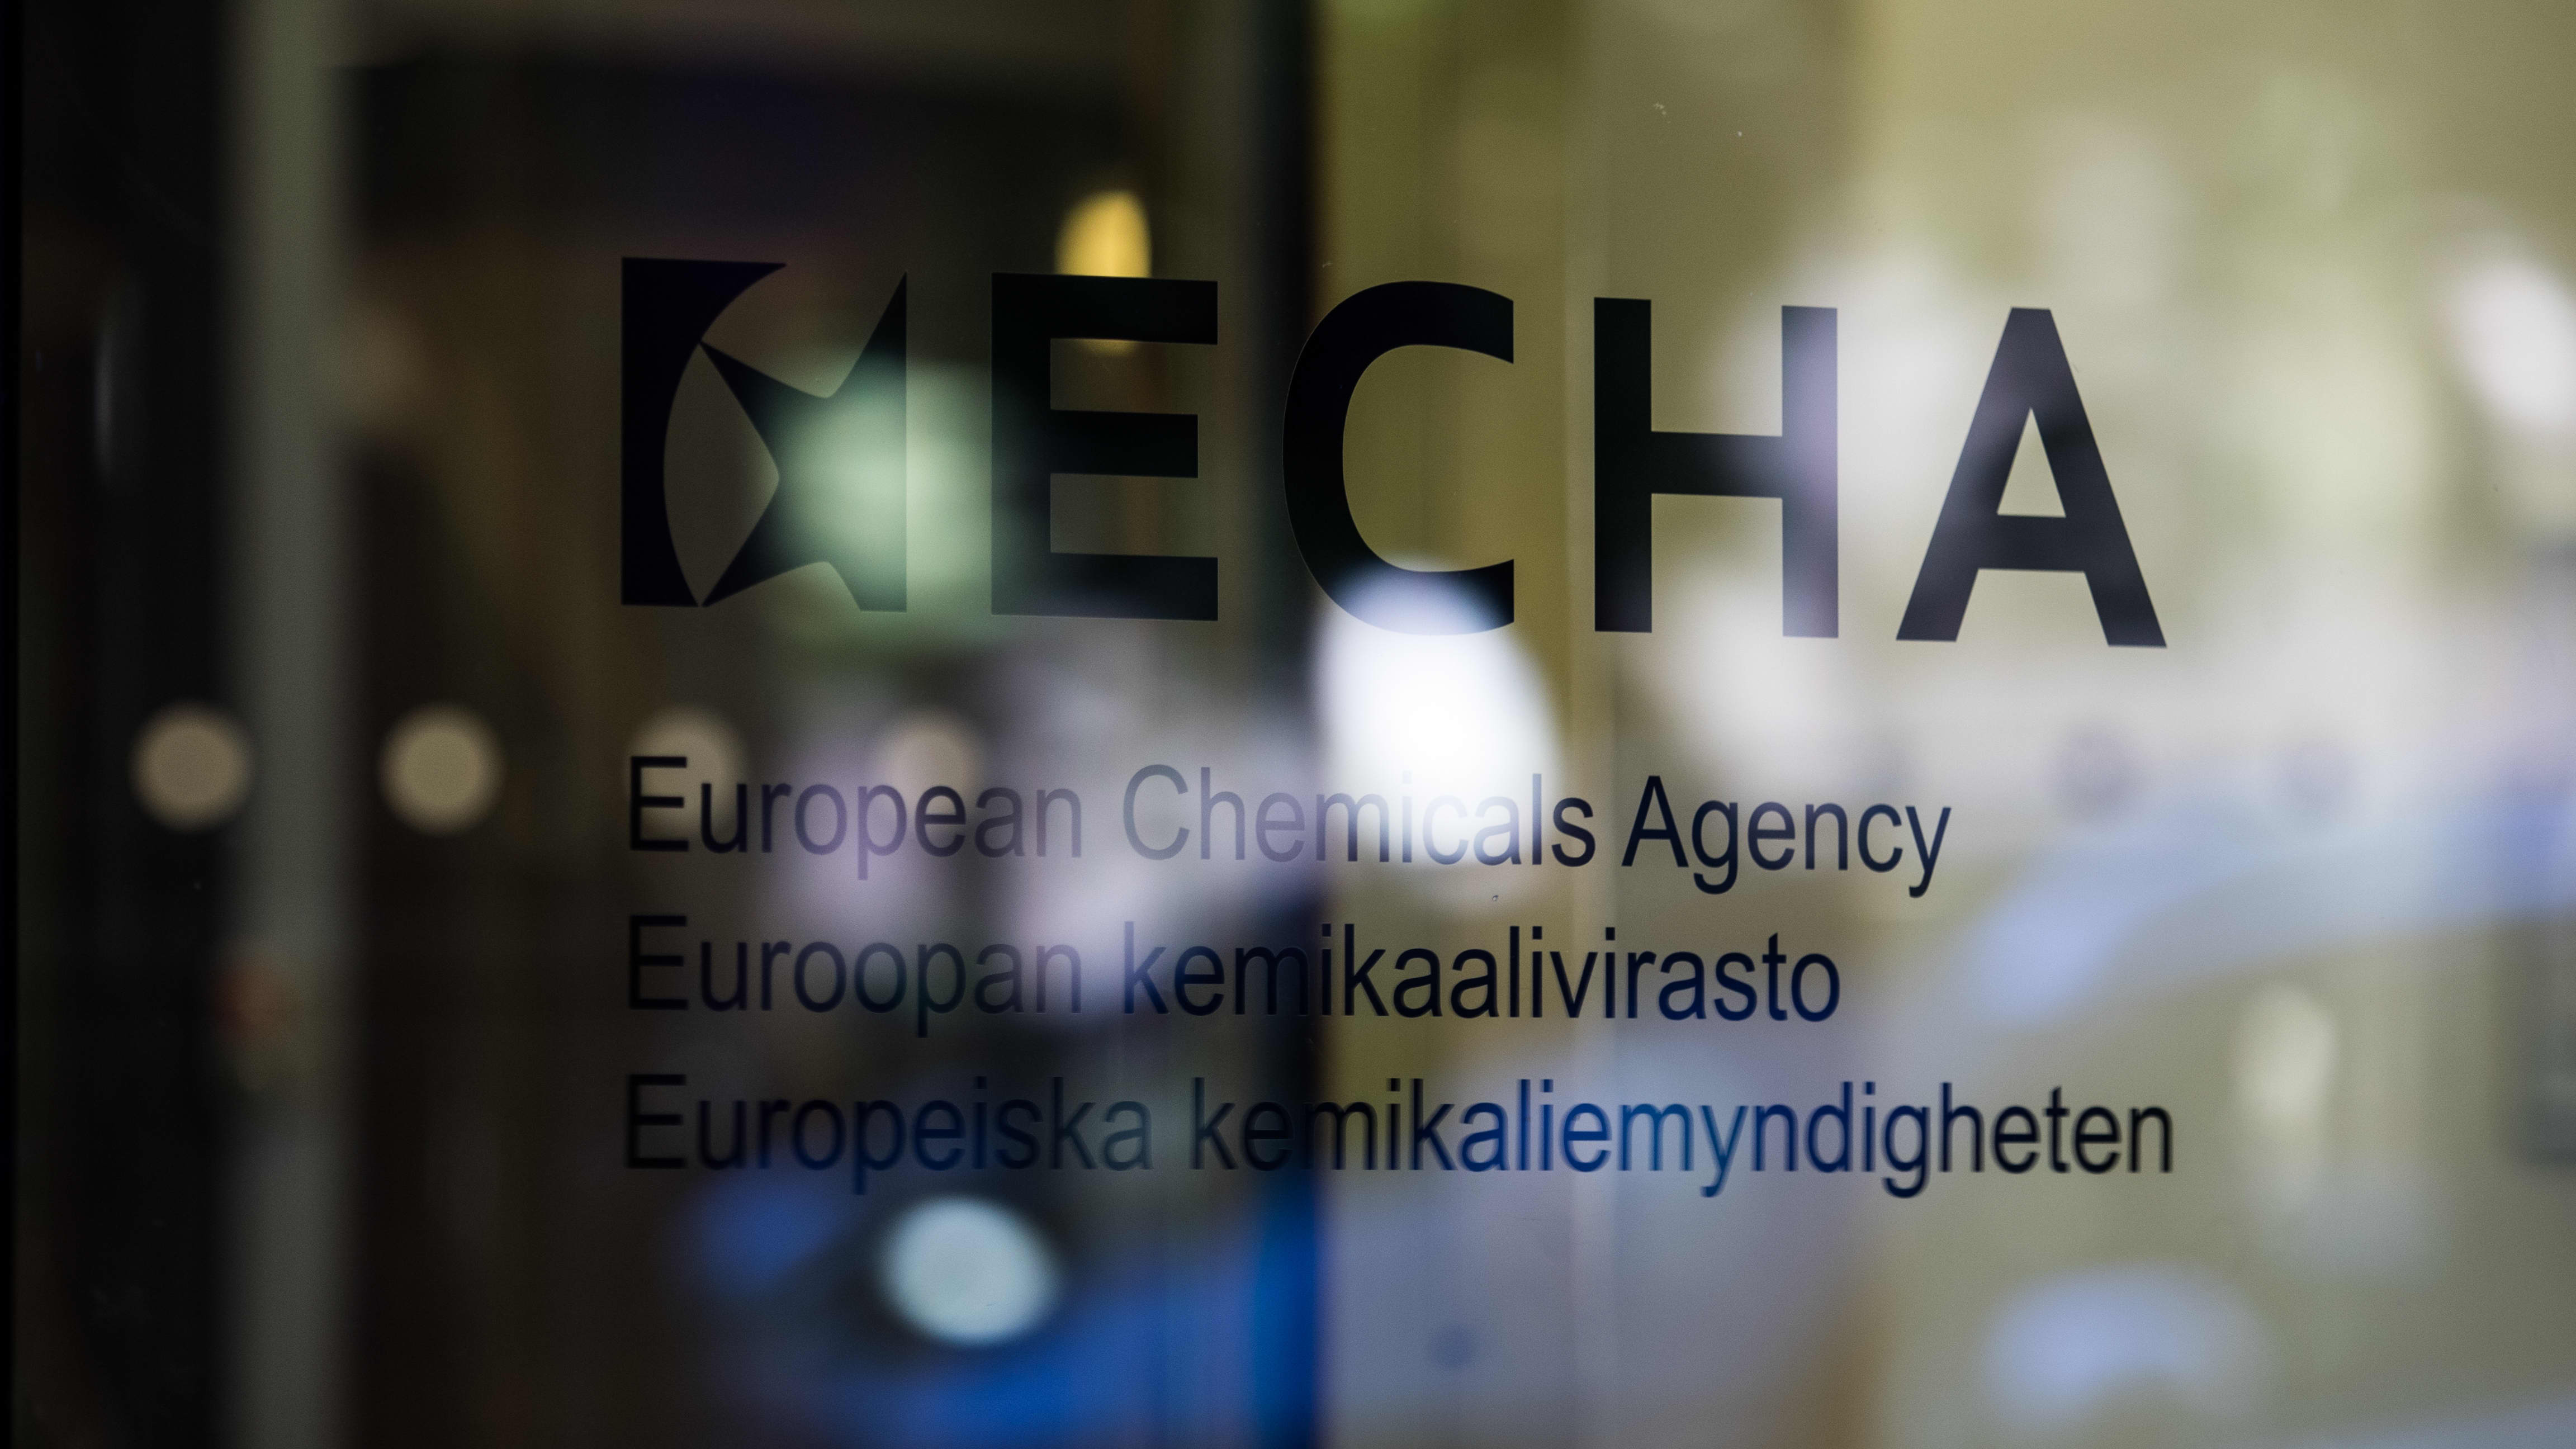 ECHA Euroopan kemikaalivirasto